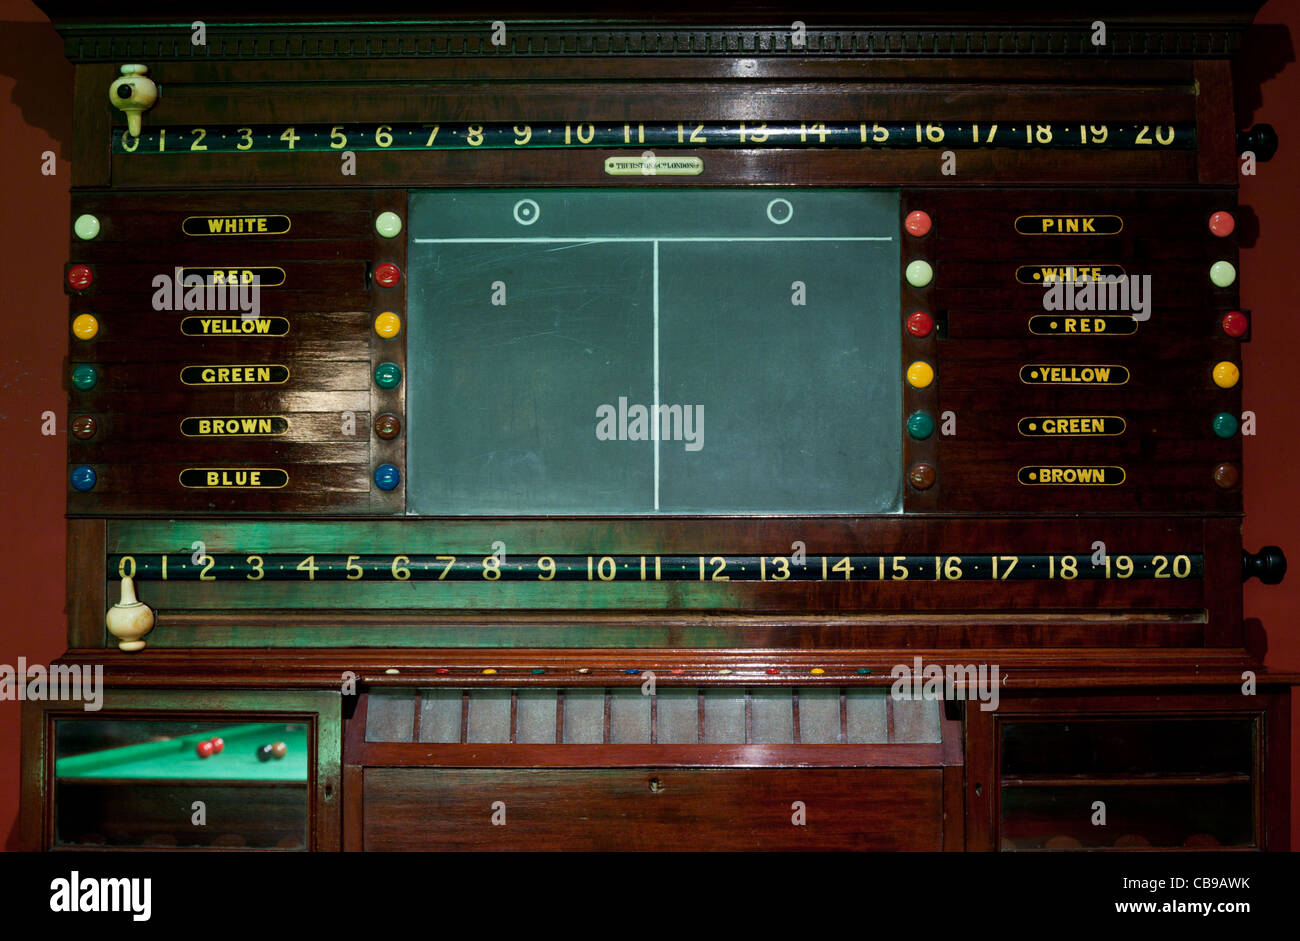 Snooker billiards score fotografías e imágenes de alta resolución - Alamy